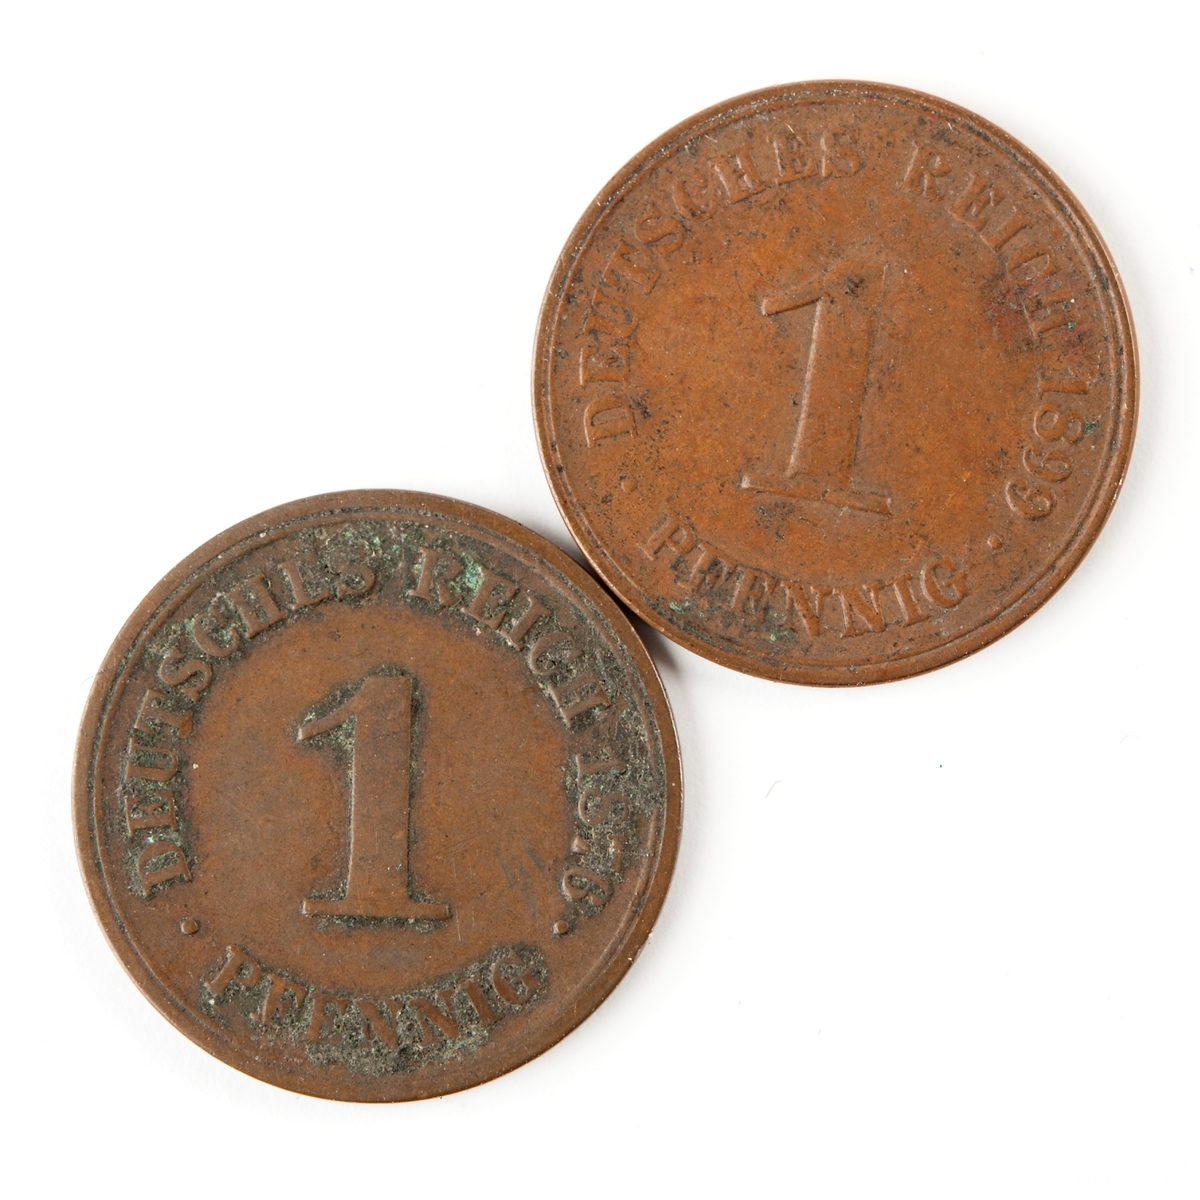 Tyskt kopparmynt, 1 pfennig från 1876.